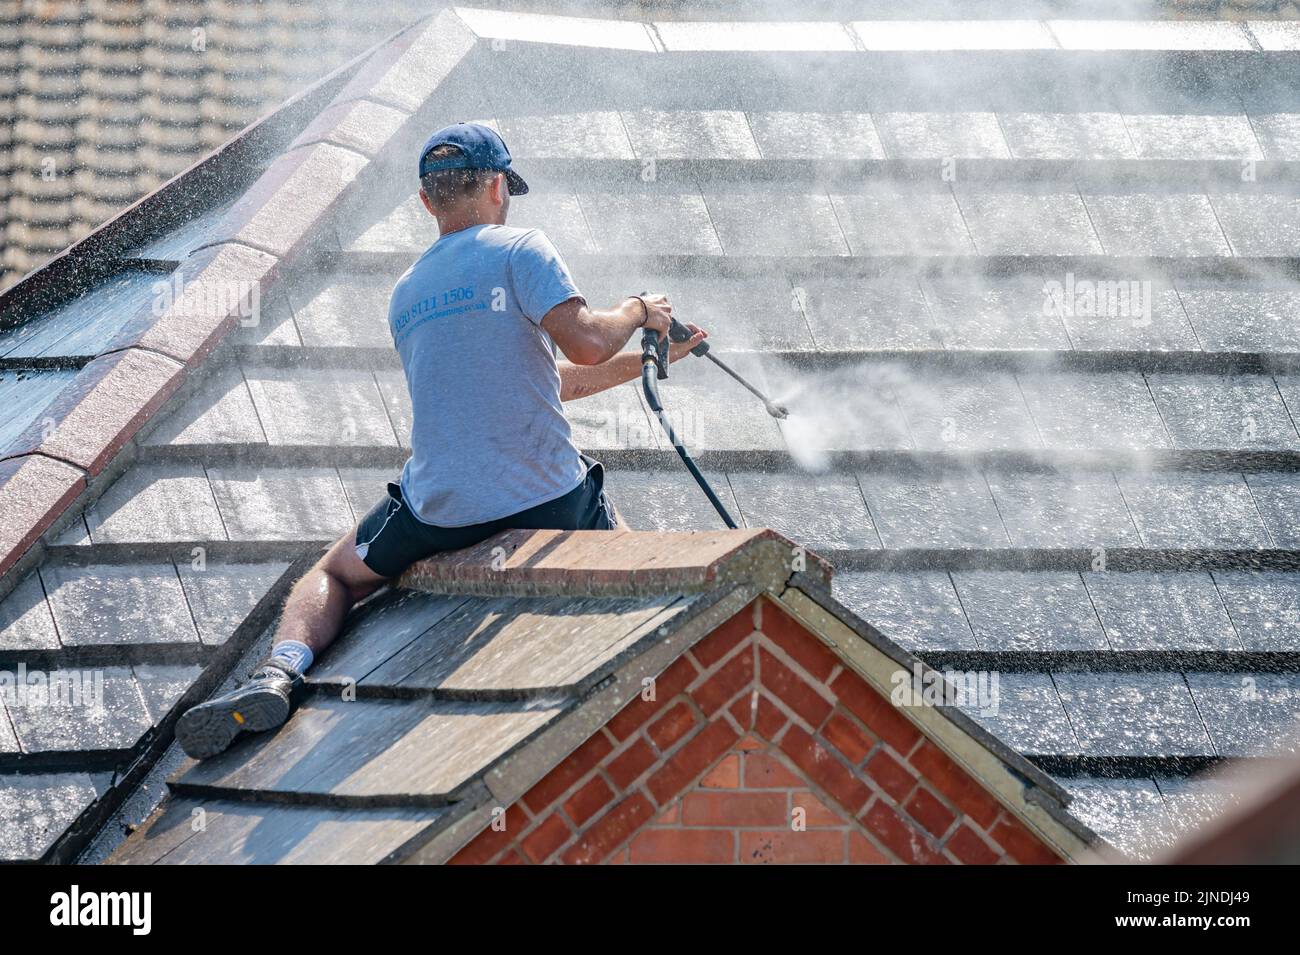 Uomo seduto sul tetto piastrellato di una casa, utilizzando una idropulitrice su un tubo flessibile, sparando un getto d'acqua per la pulizia del tetto e delle piastrelle. Foto Stock